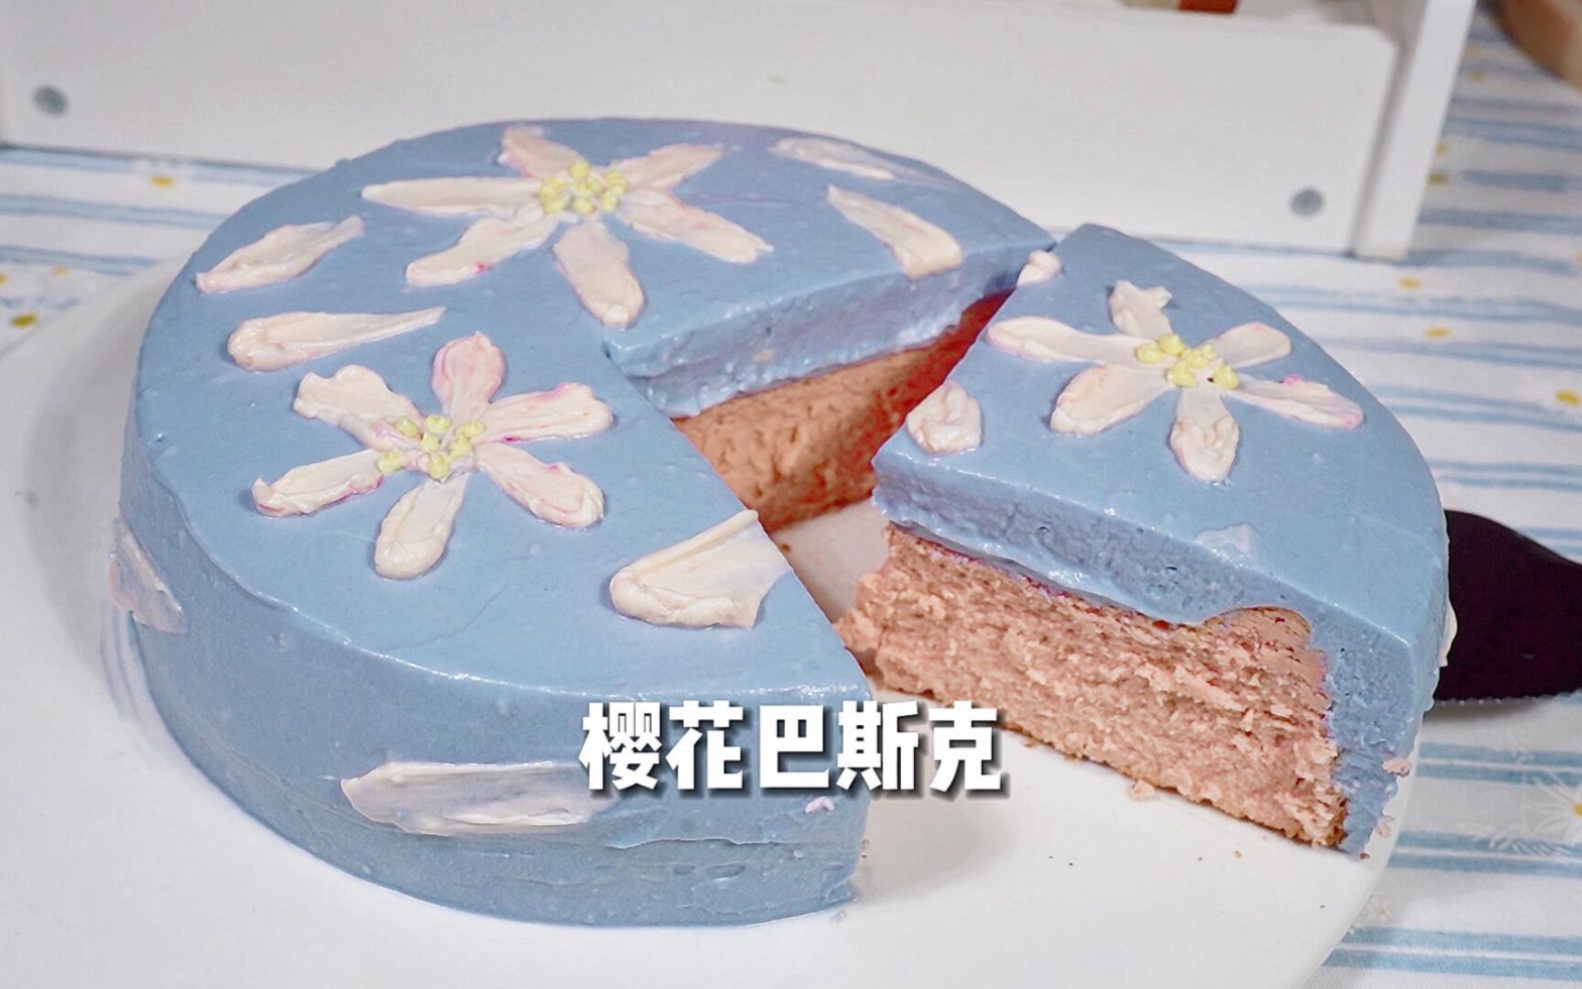 樱花之吻蛋糕 - 做给家人朋友吃的蛋糕